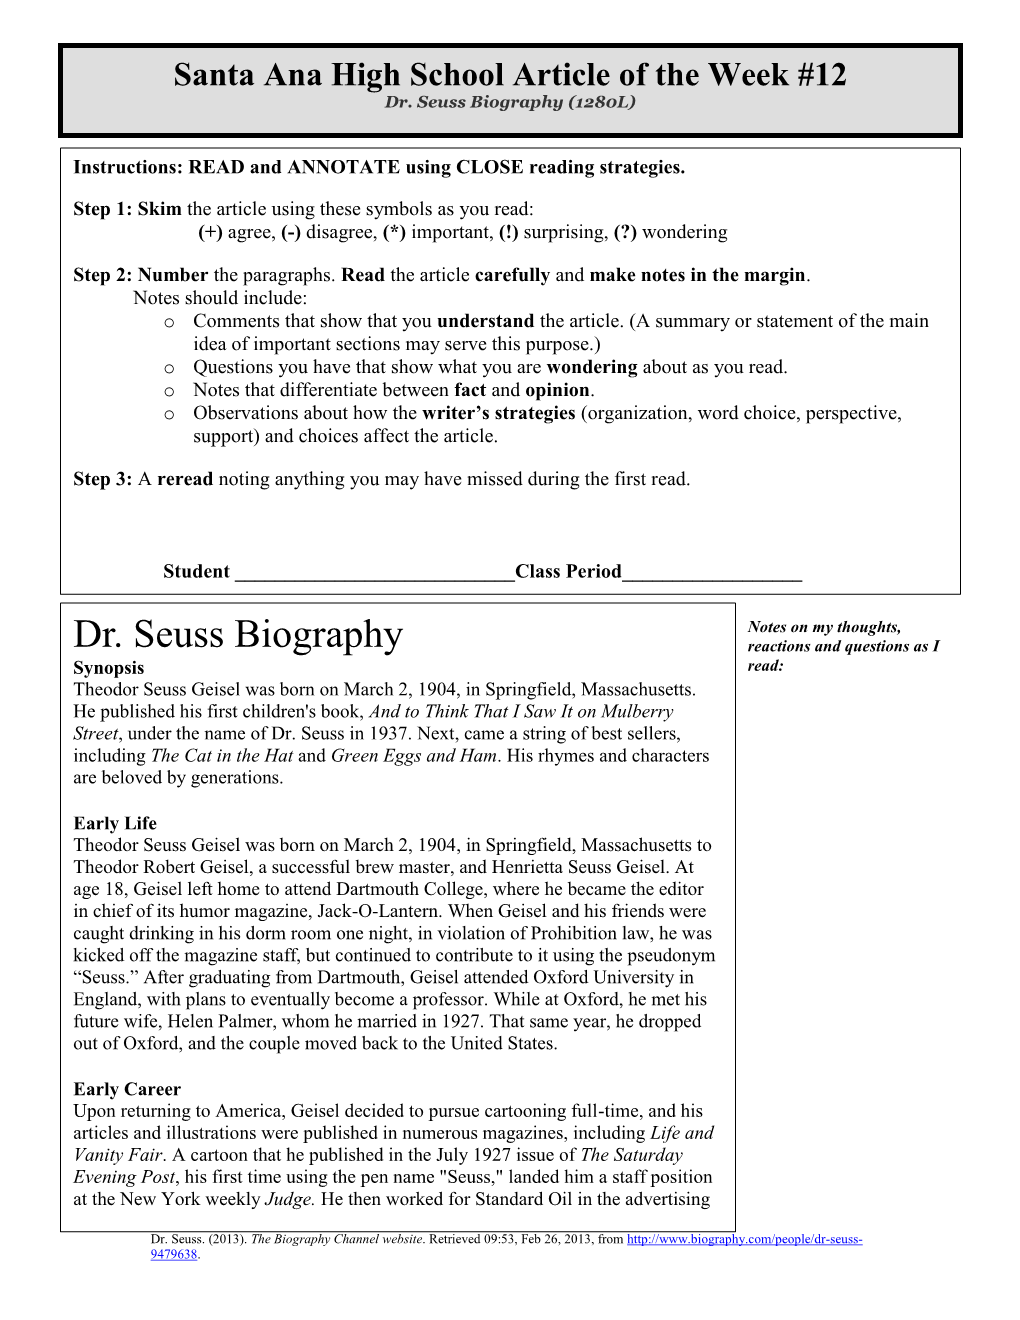 Dr. Seuss Biography (1280L)